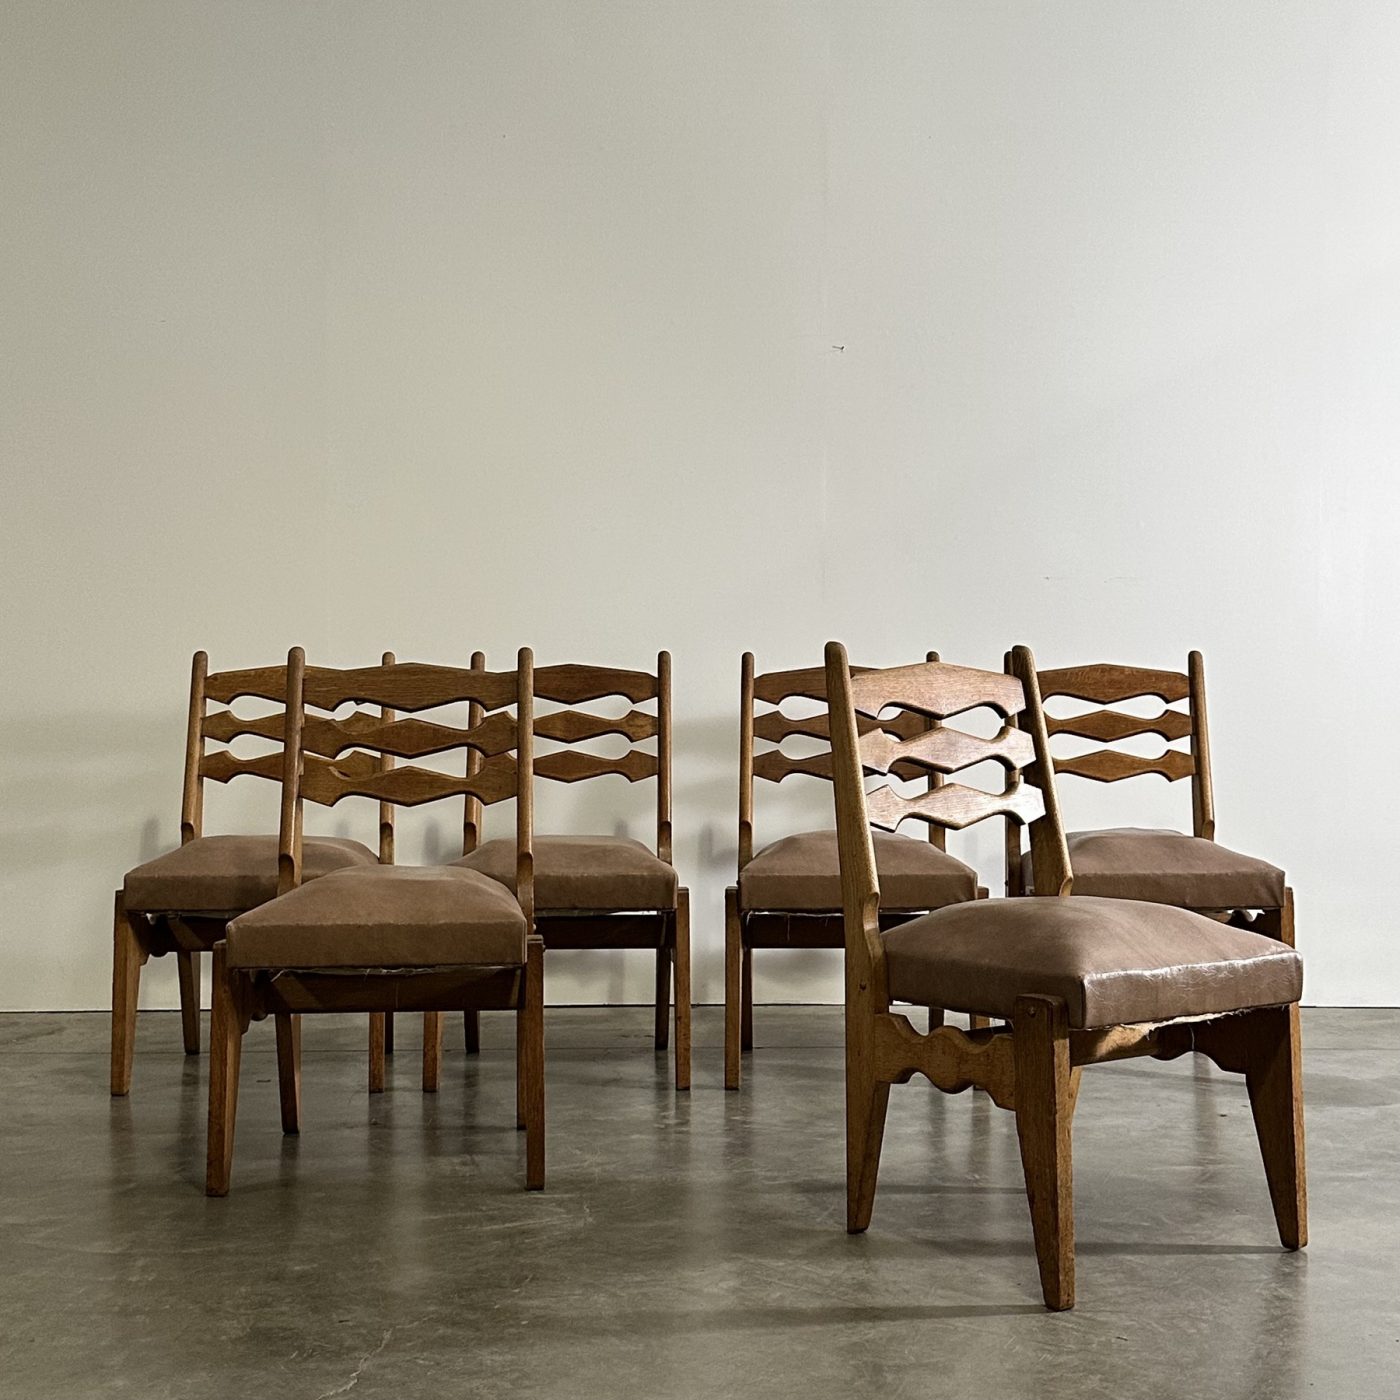 objet-vagabond-guillerme-chairs0003